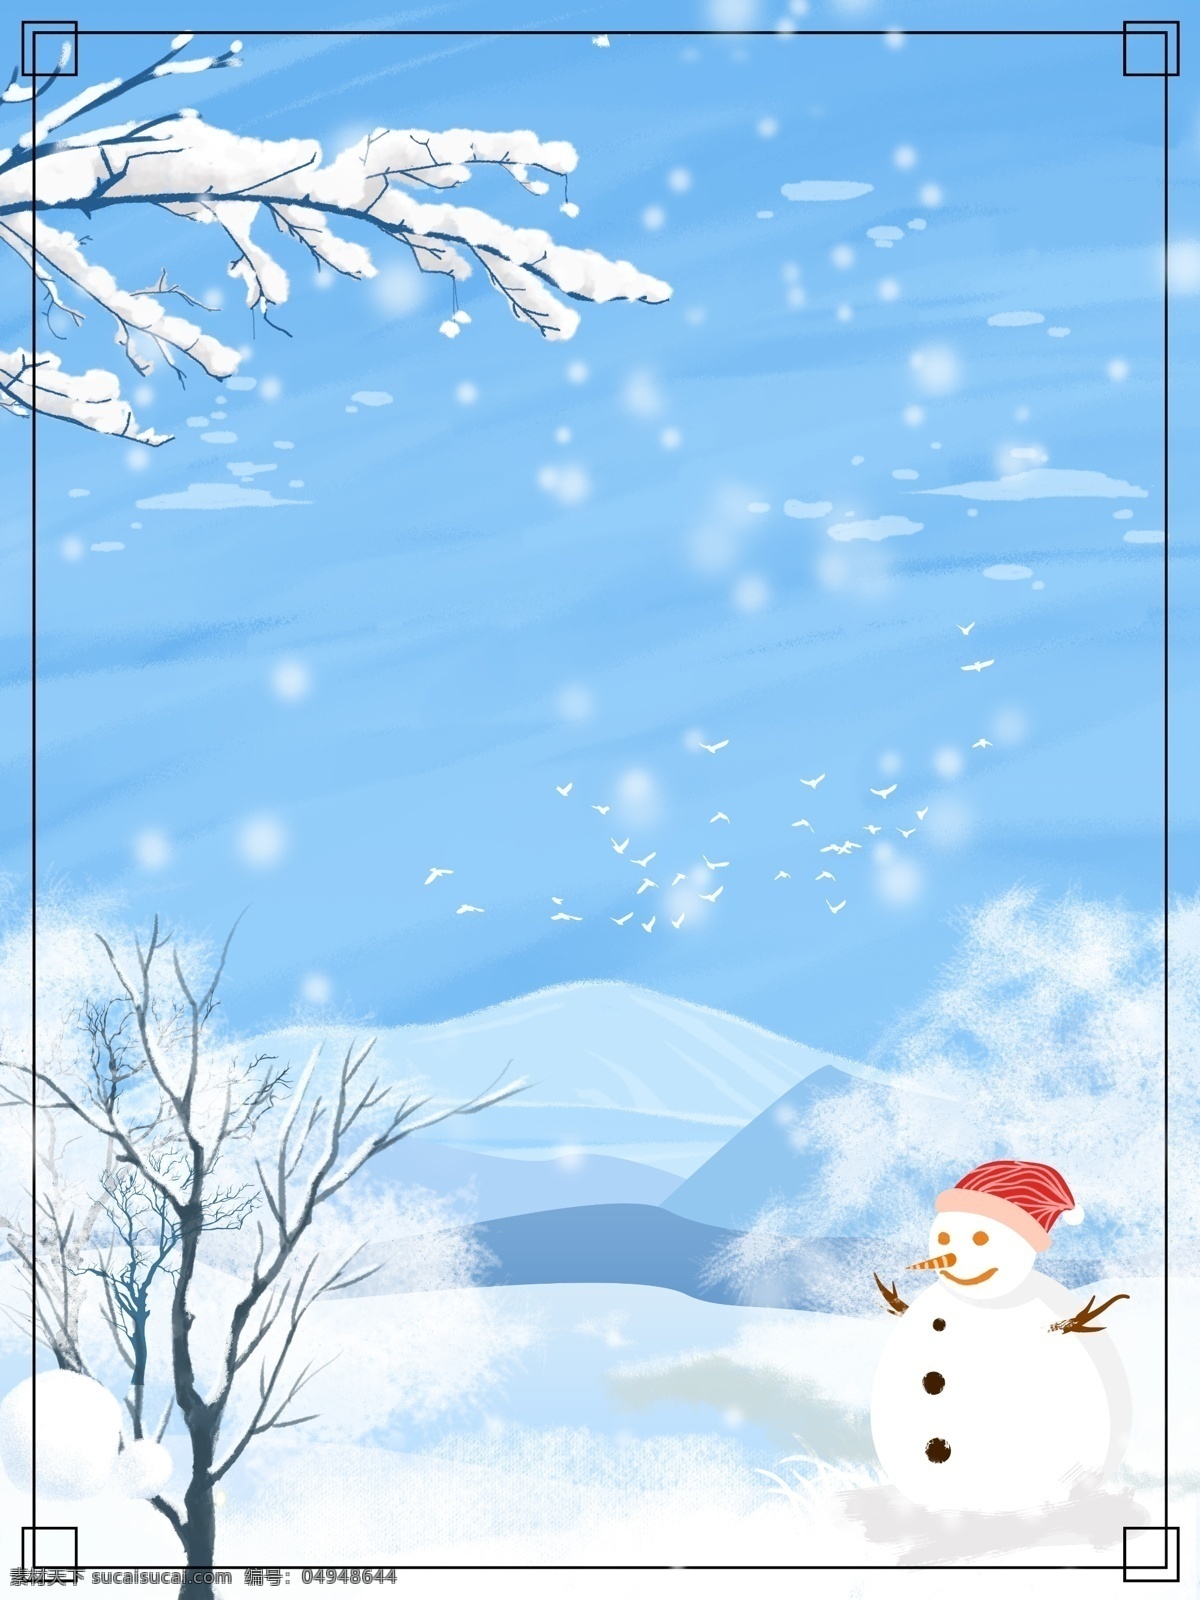 彩绘 大雪 节气 雪地 雪人 背景 蓝色 冬季 冬天 下雪 彩绘背景 传统节气